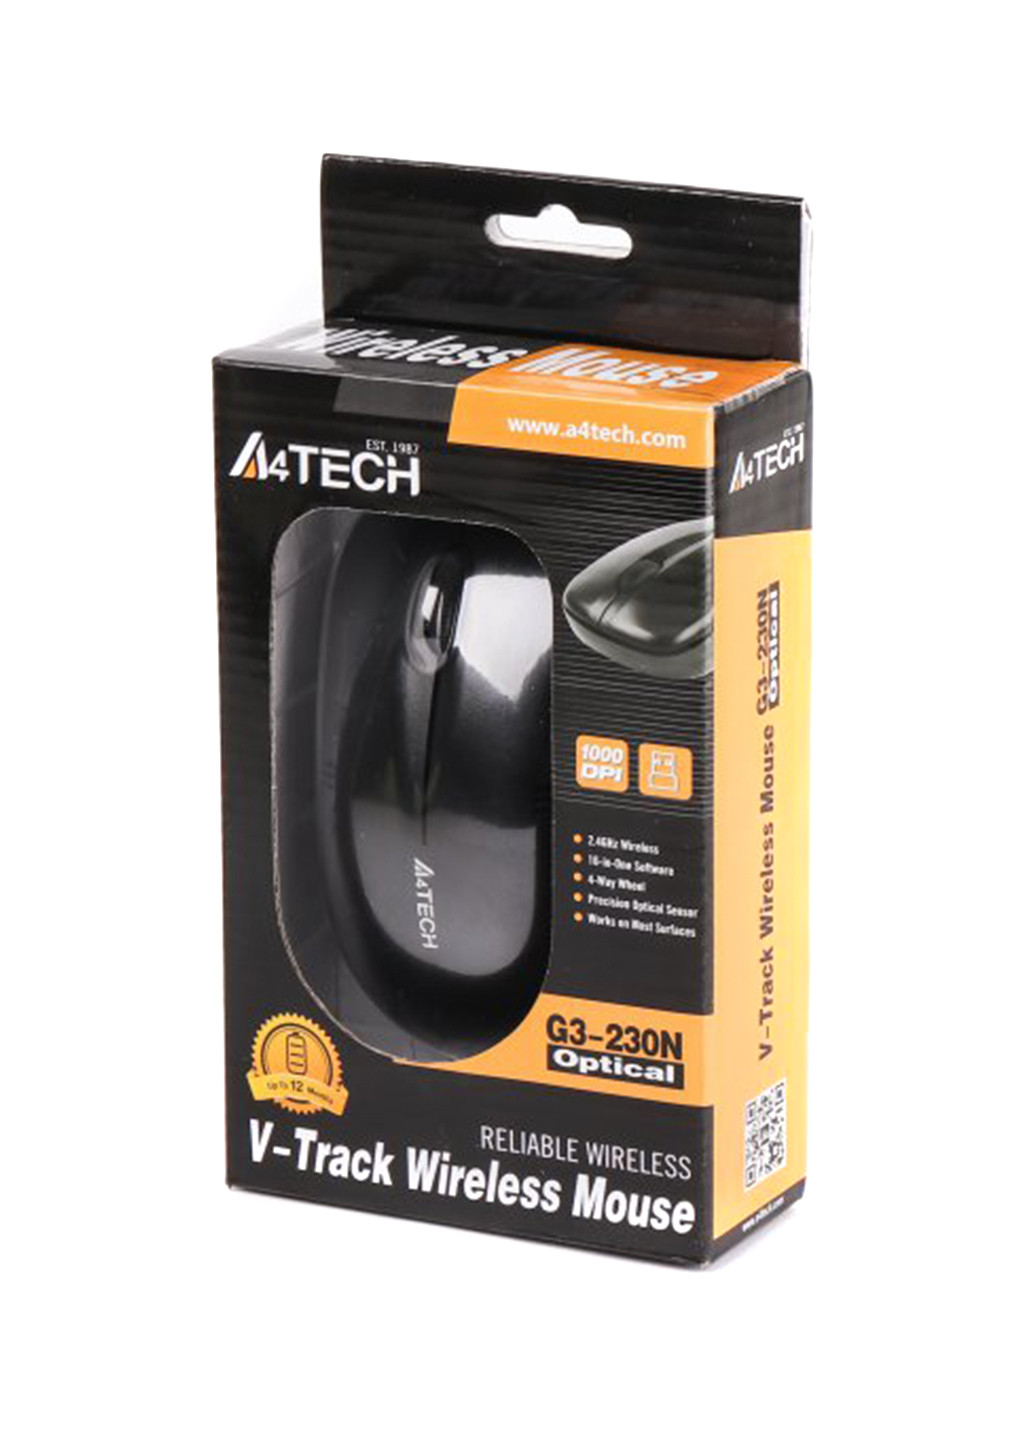 Мышь беспроводная V-Track USB, 1000dpi (G3-230N-1 (Black)) A4Tech v-track usb, 1000dpi (g3-230n-1 (black)) (146465937)